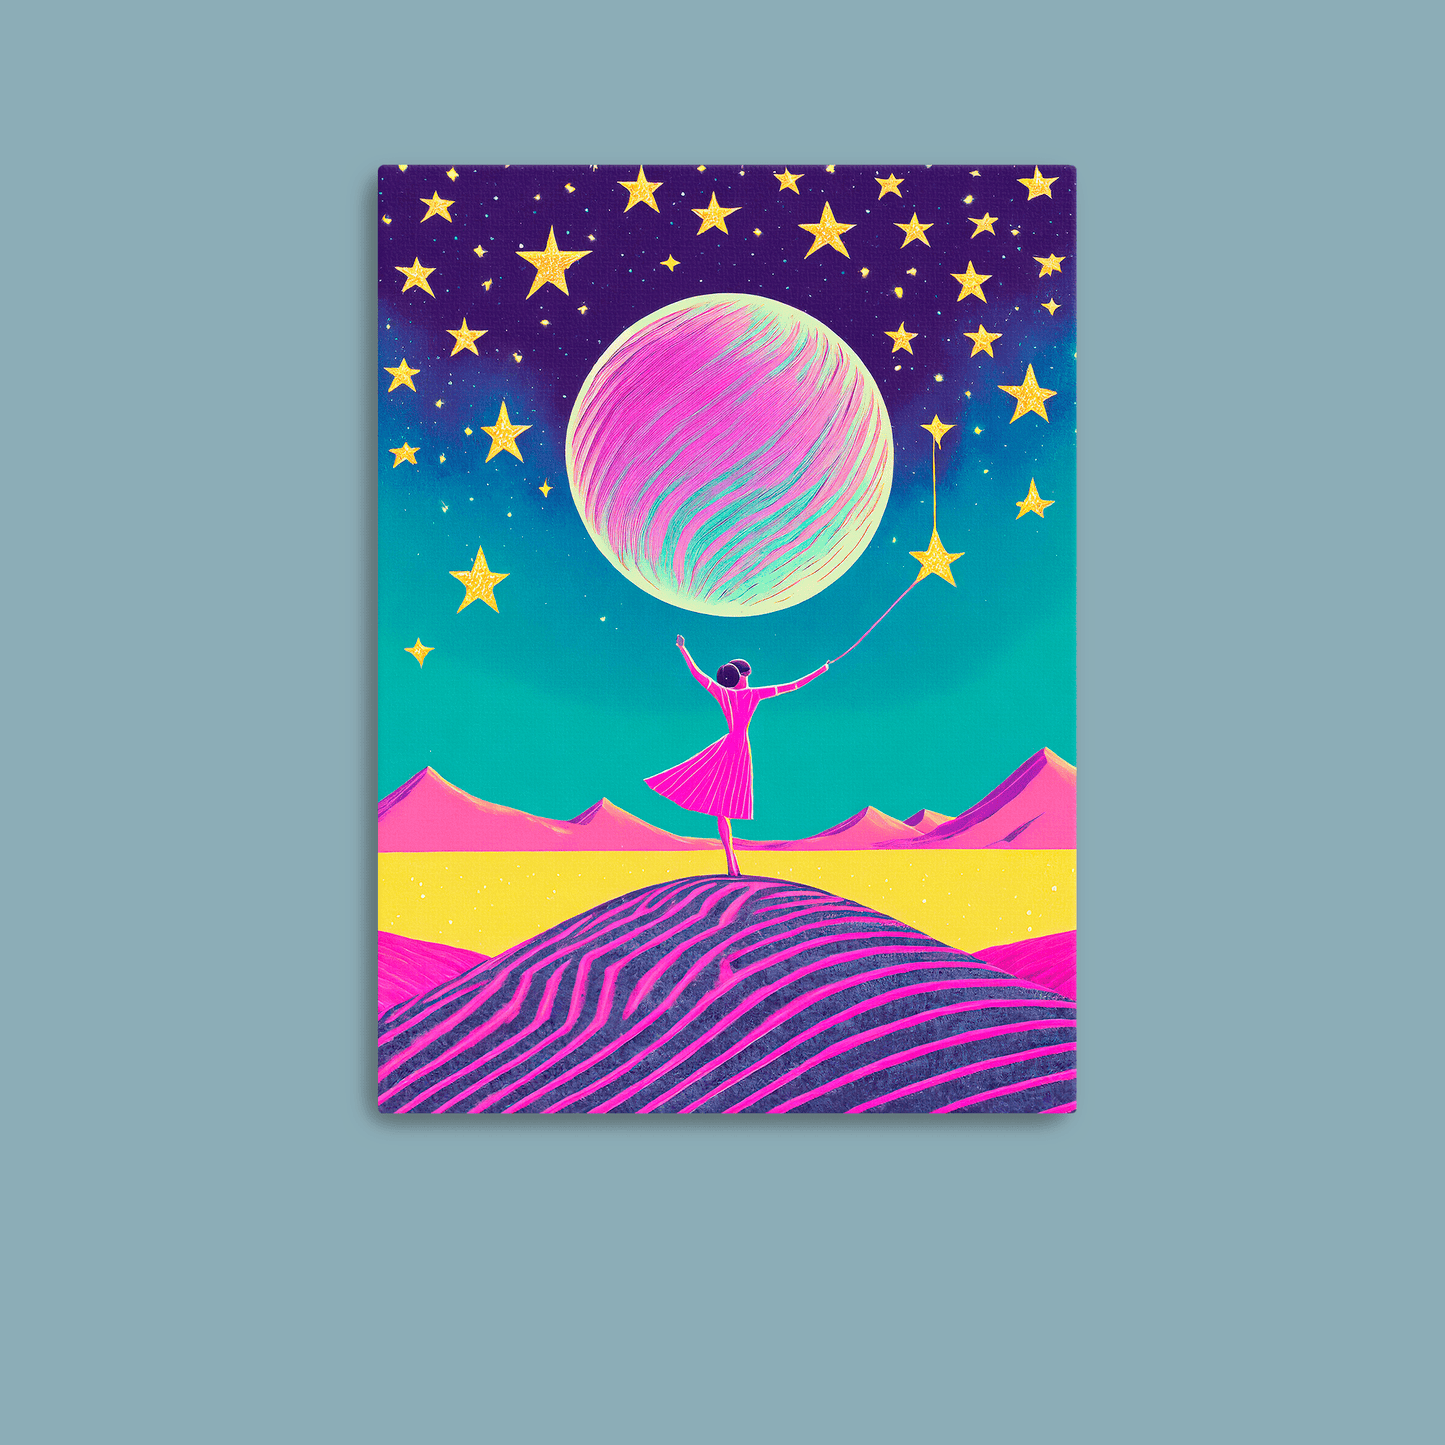 Reach For The Stars - Canvas Wrap - Premium Canvas Print